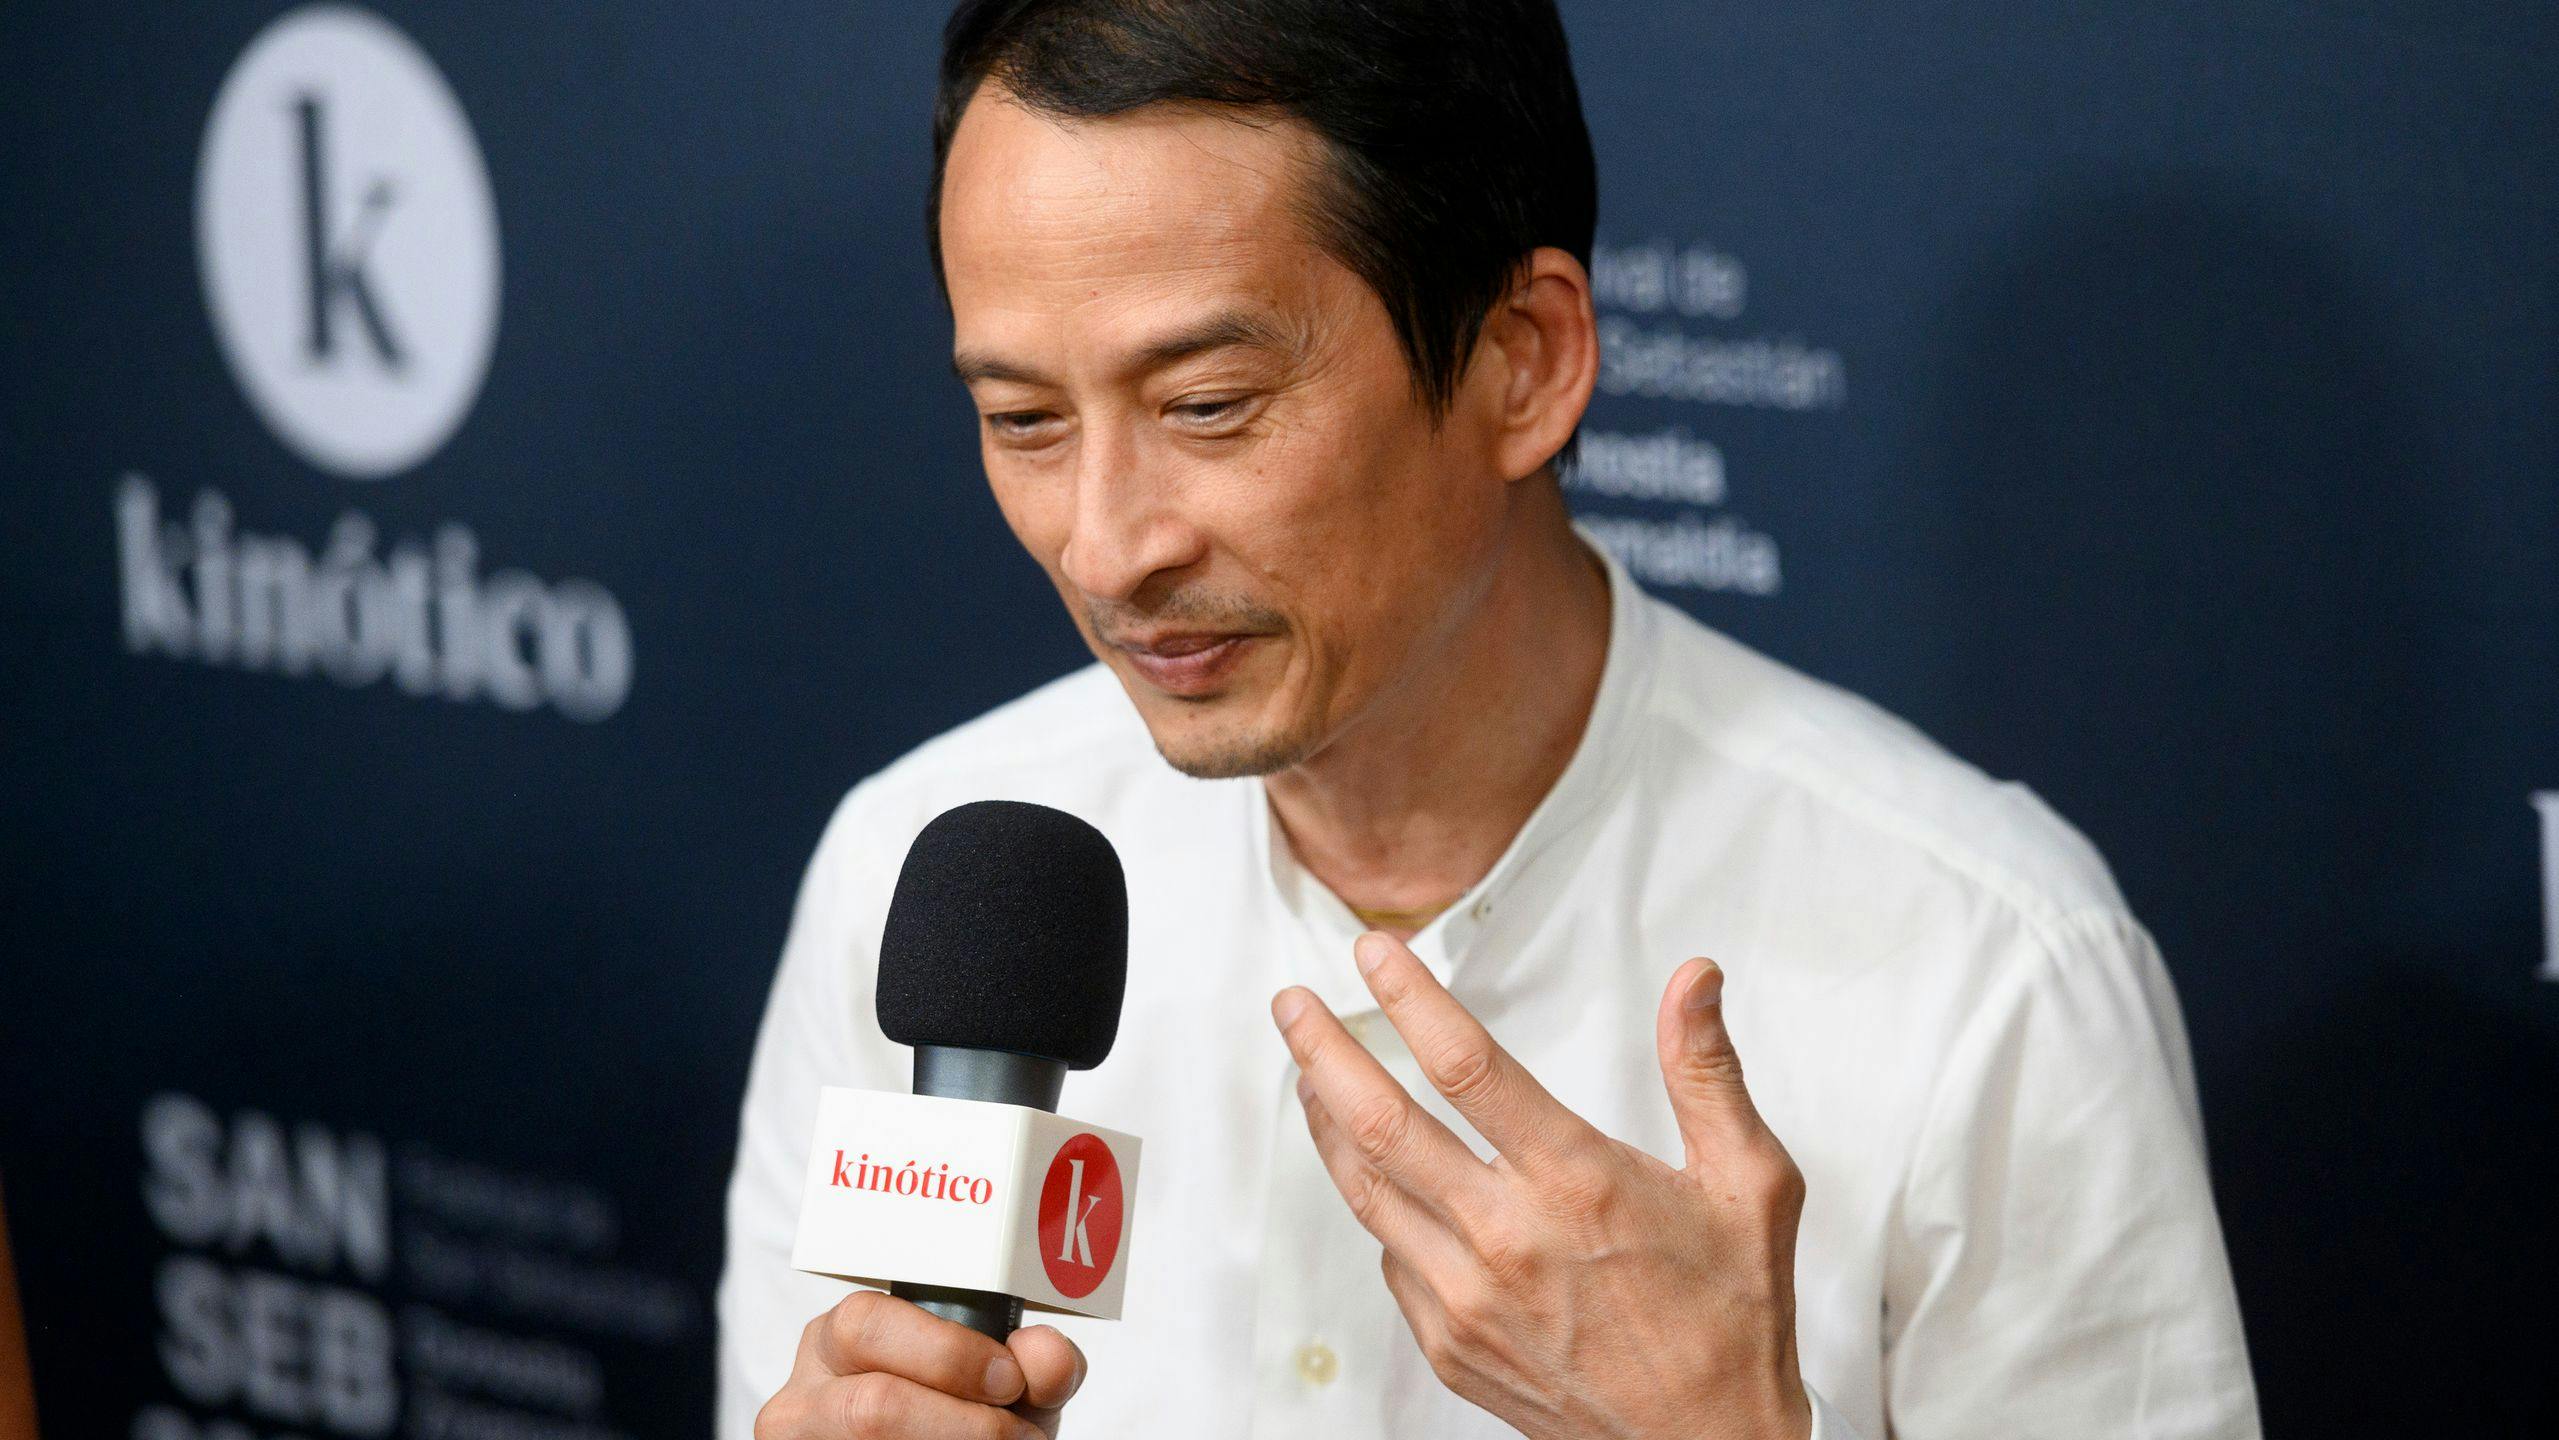 Tran Anh Hung durante su entrevista en el set de Kinótico en San Sebastián